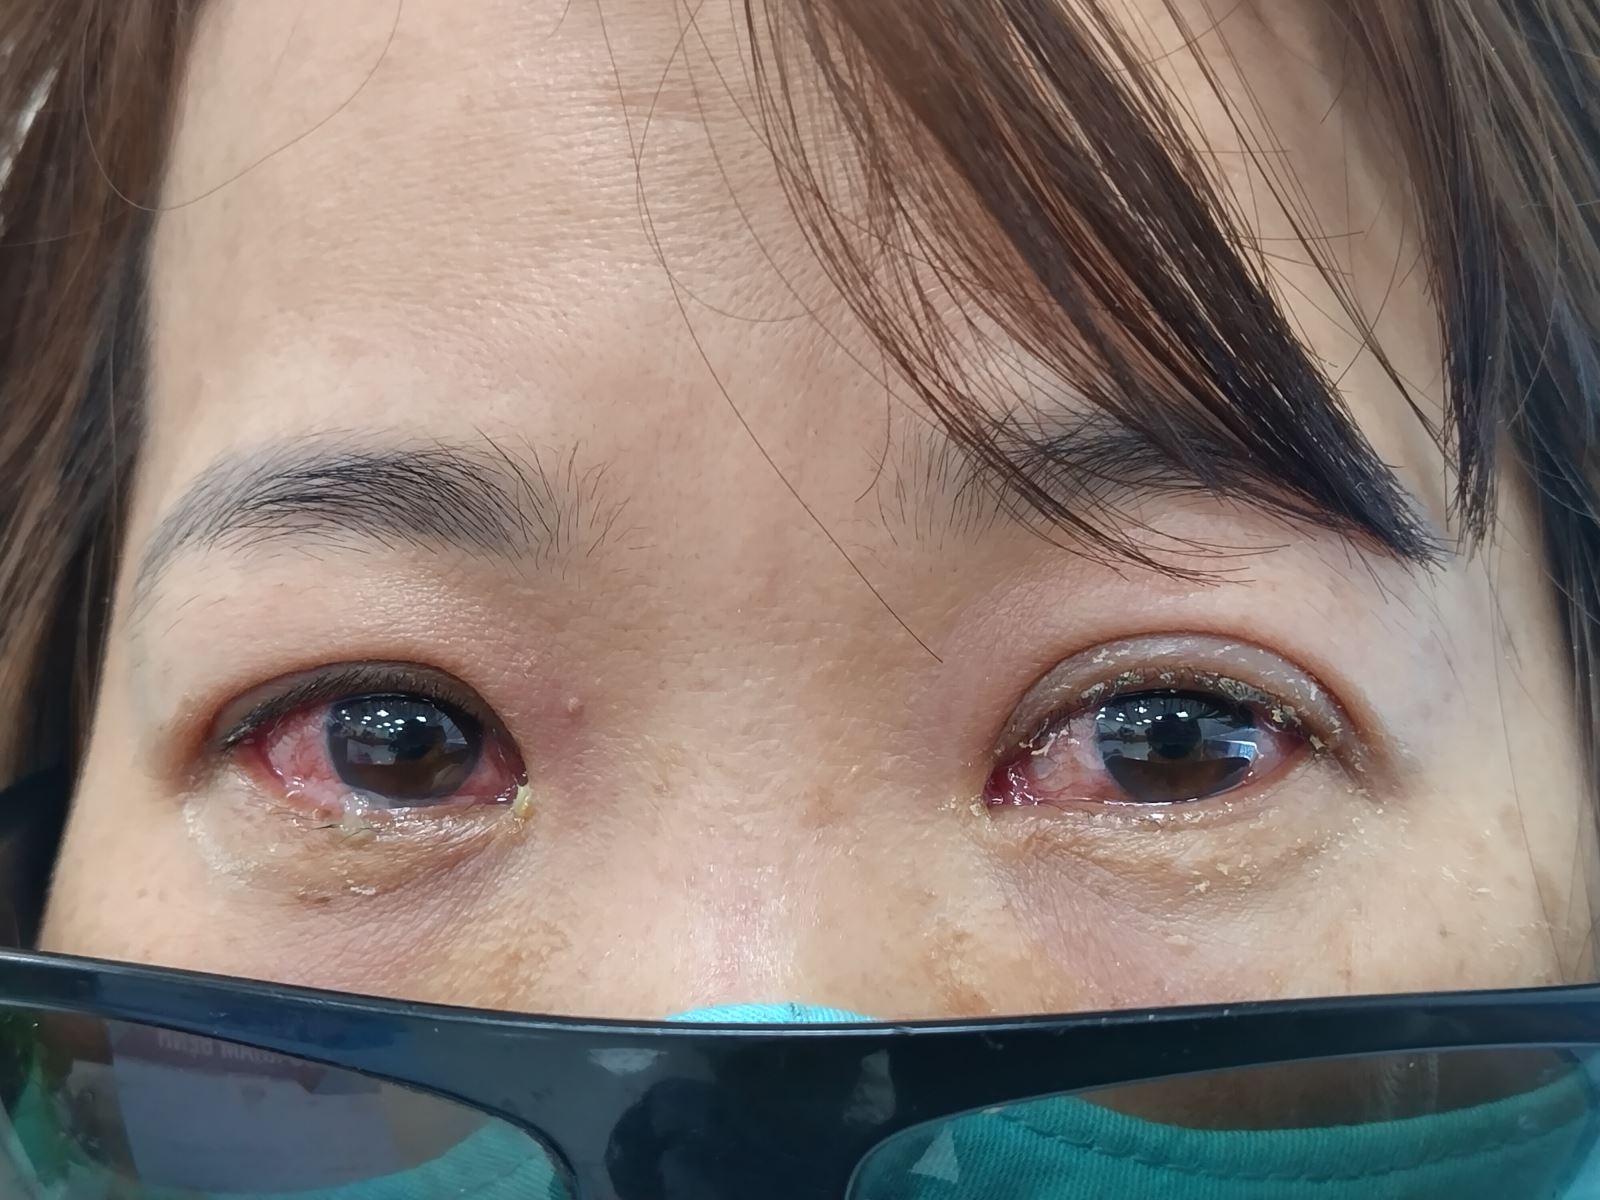 Các triệu chứng của bệnh đau mắt đỏ như mắt đỏ, tiết nhiều ghèn và chảy nước mắt sống. Ảnh: D.T